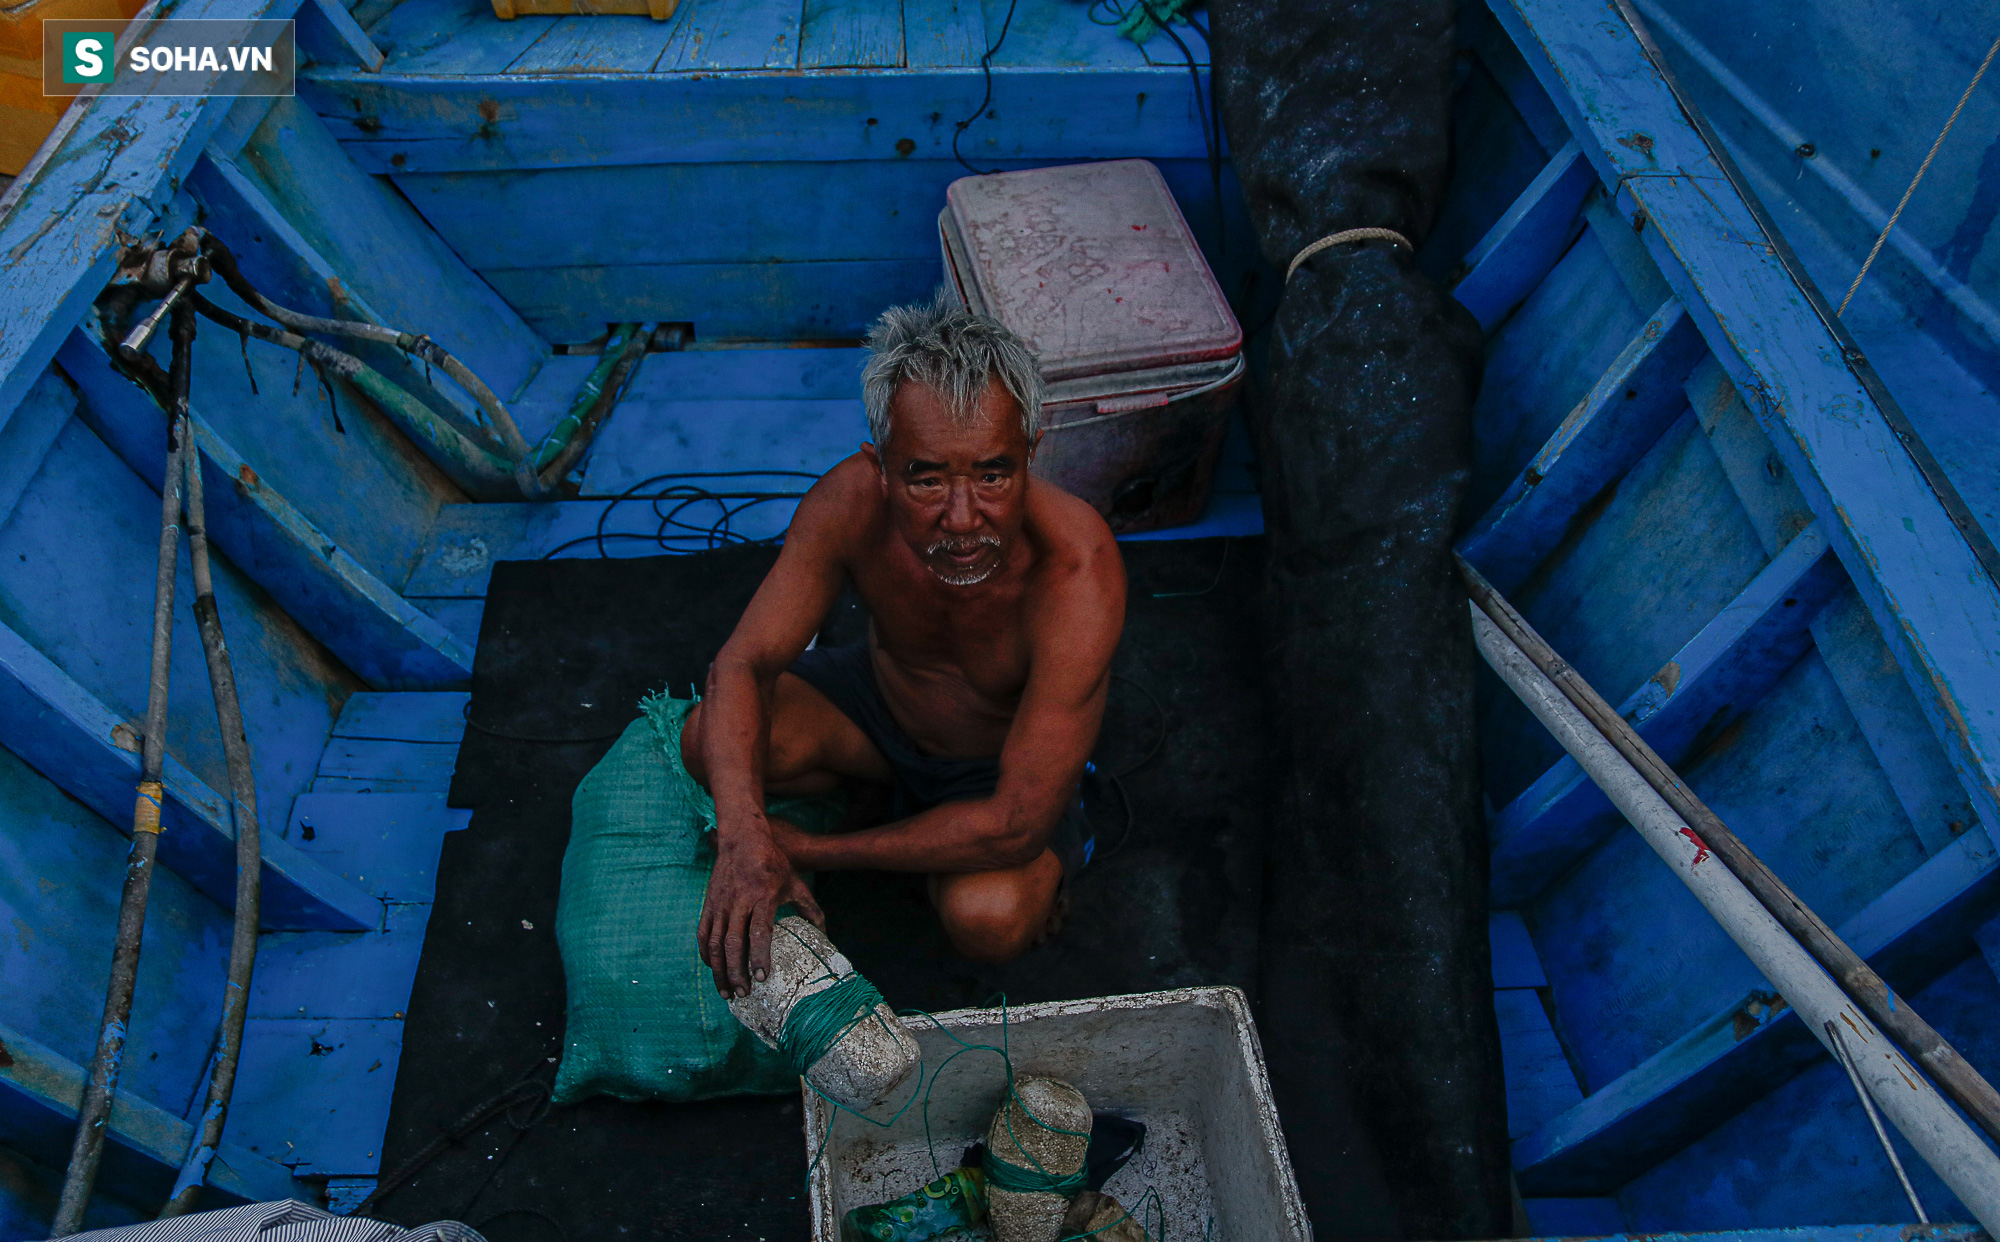 ‘Kiệt sức’ vì Covid-19, ngư dân Bình Thuận liều mình ra khơi giữa mùa biển động